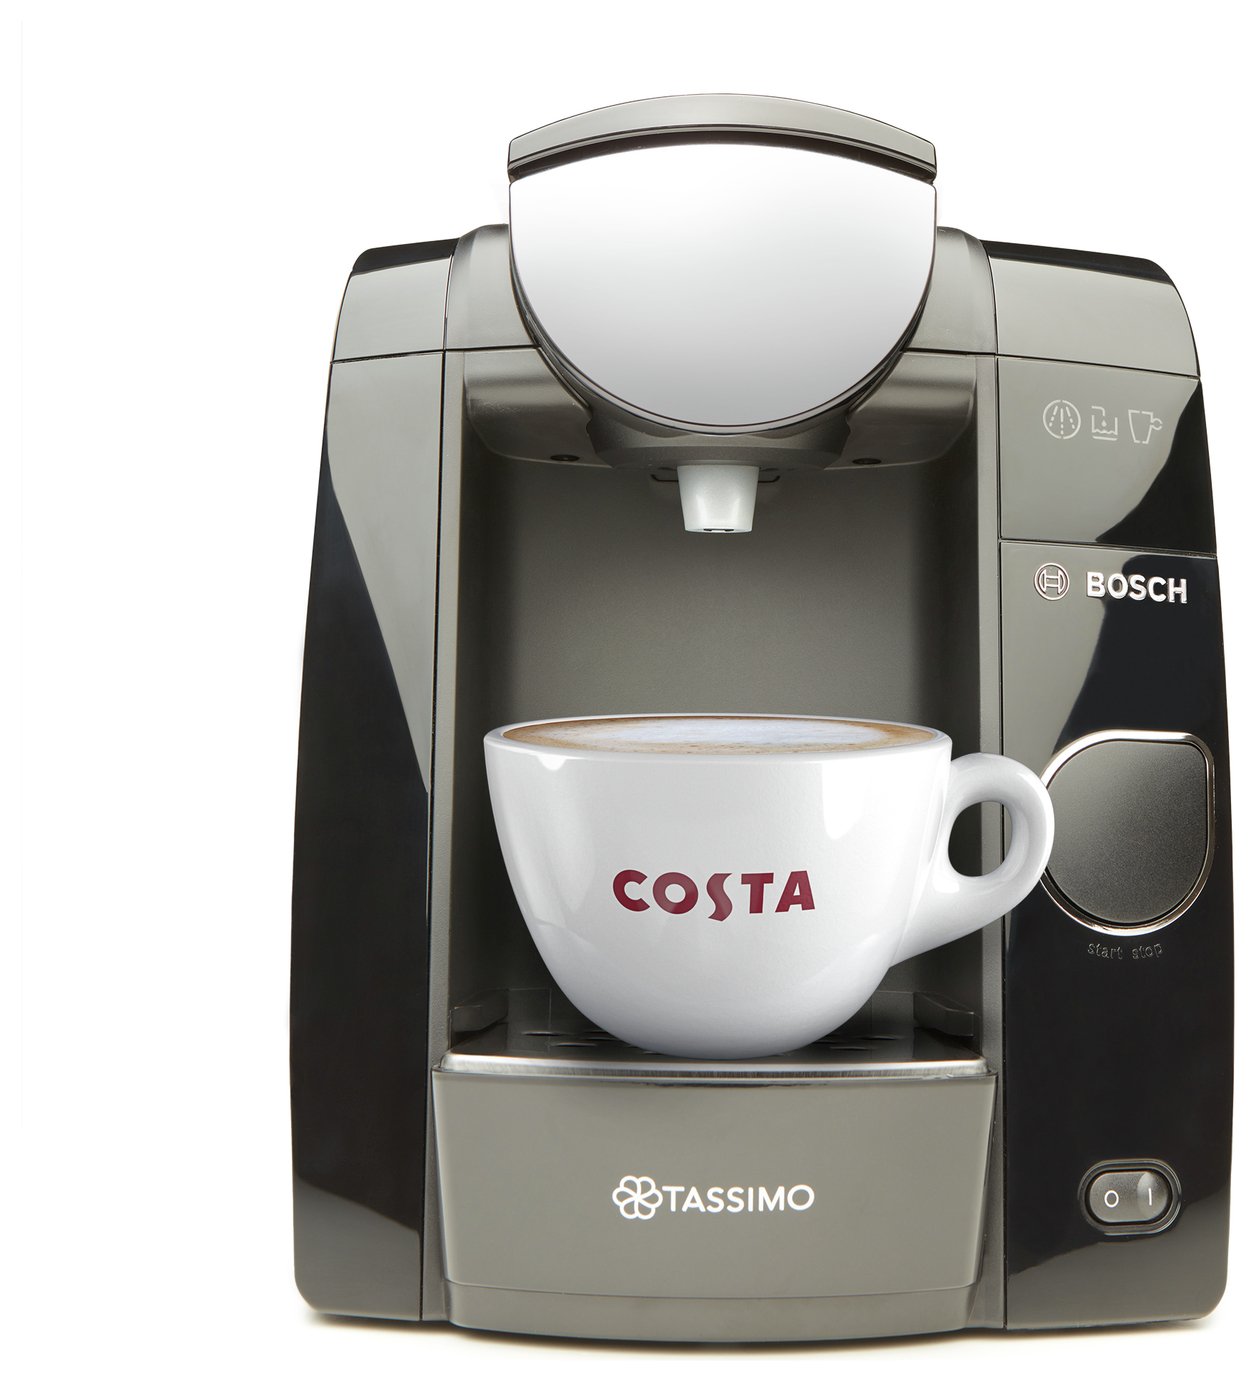 Tassimo by Bosch Joy Pod Coffee Machine Review